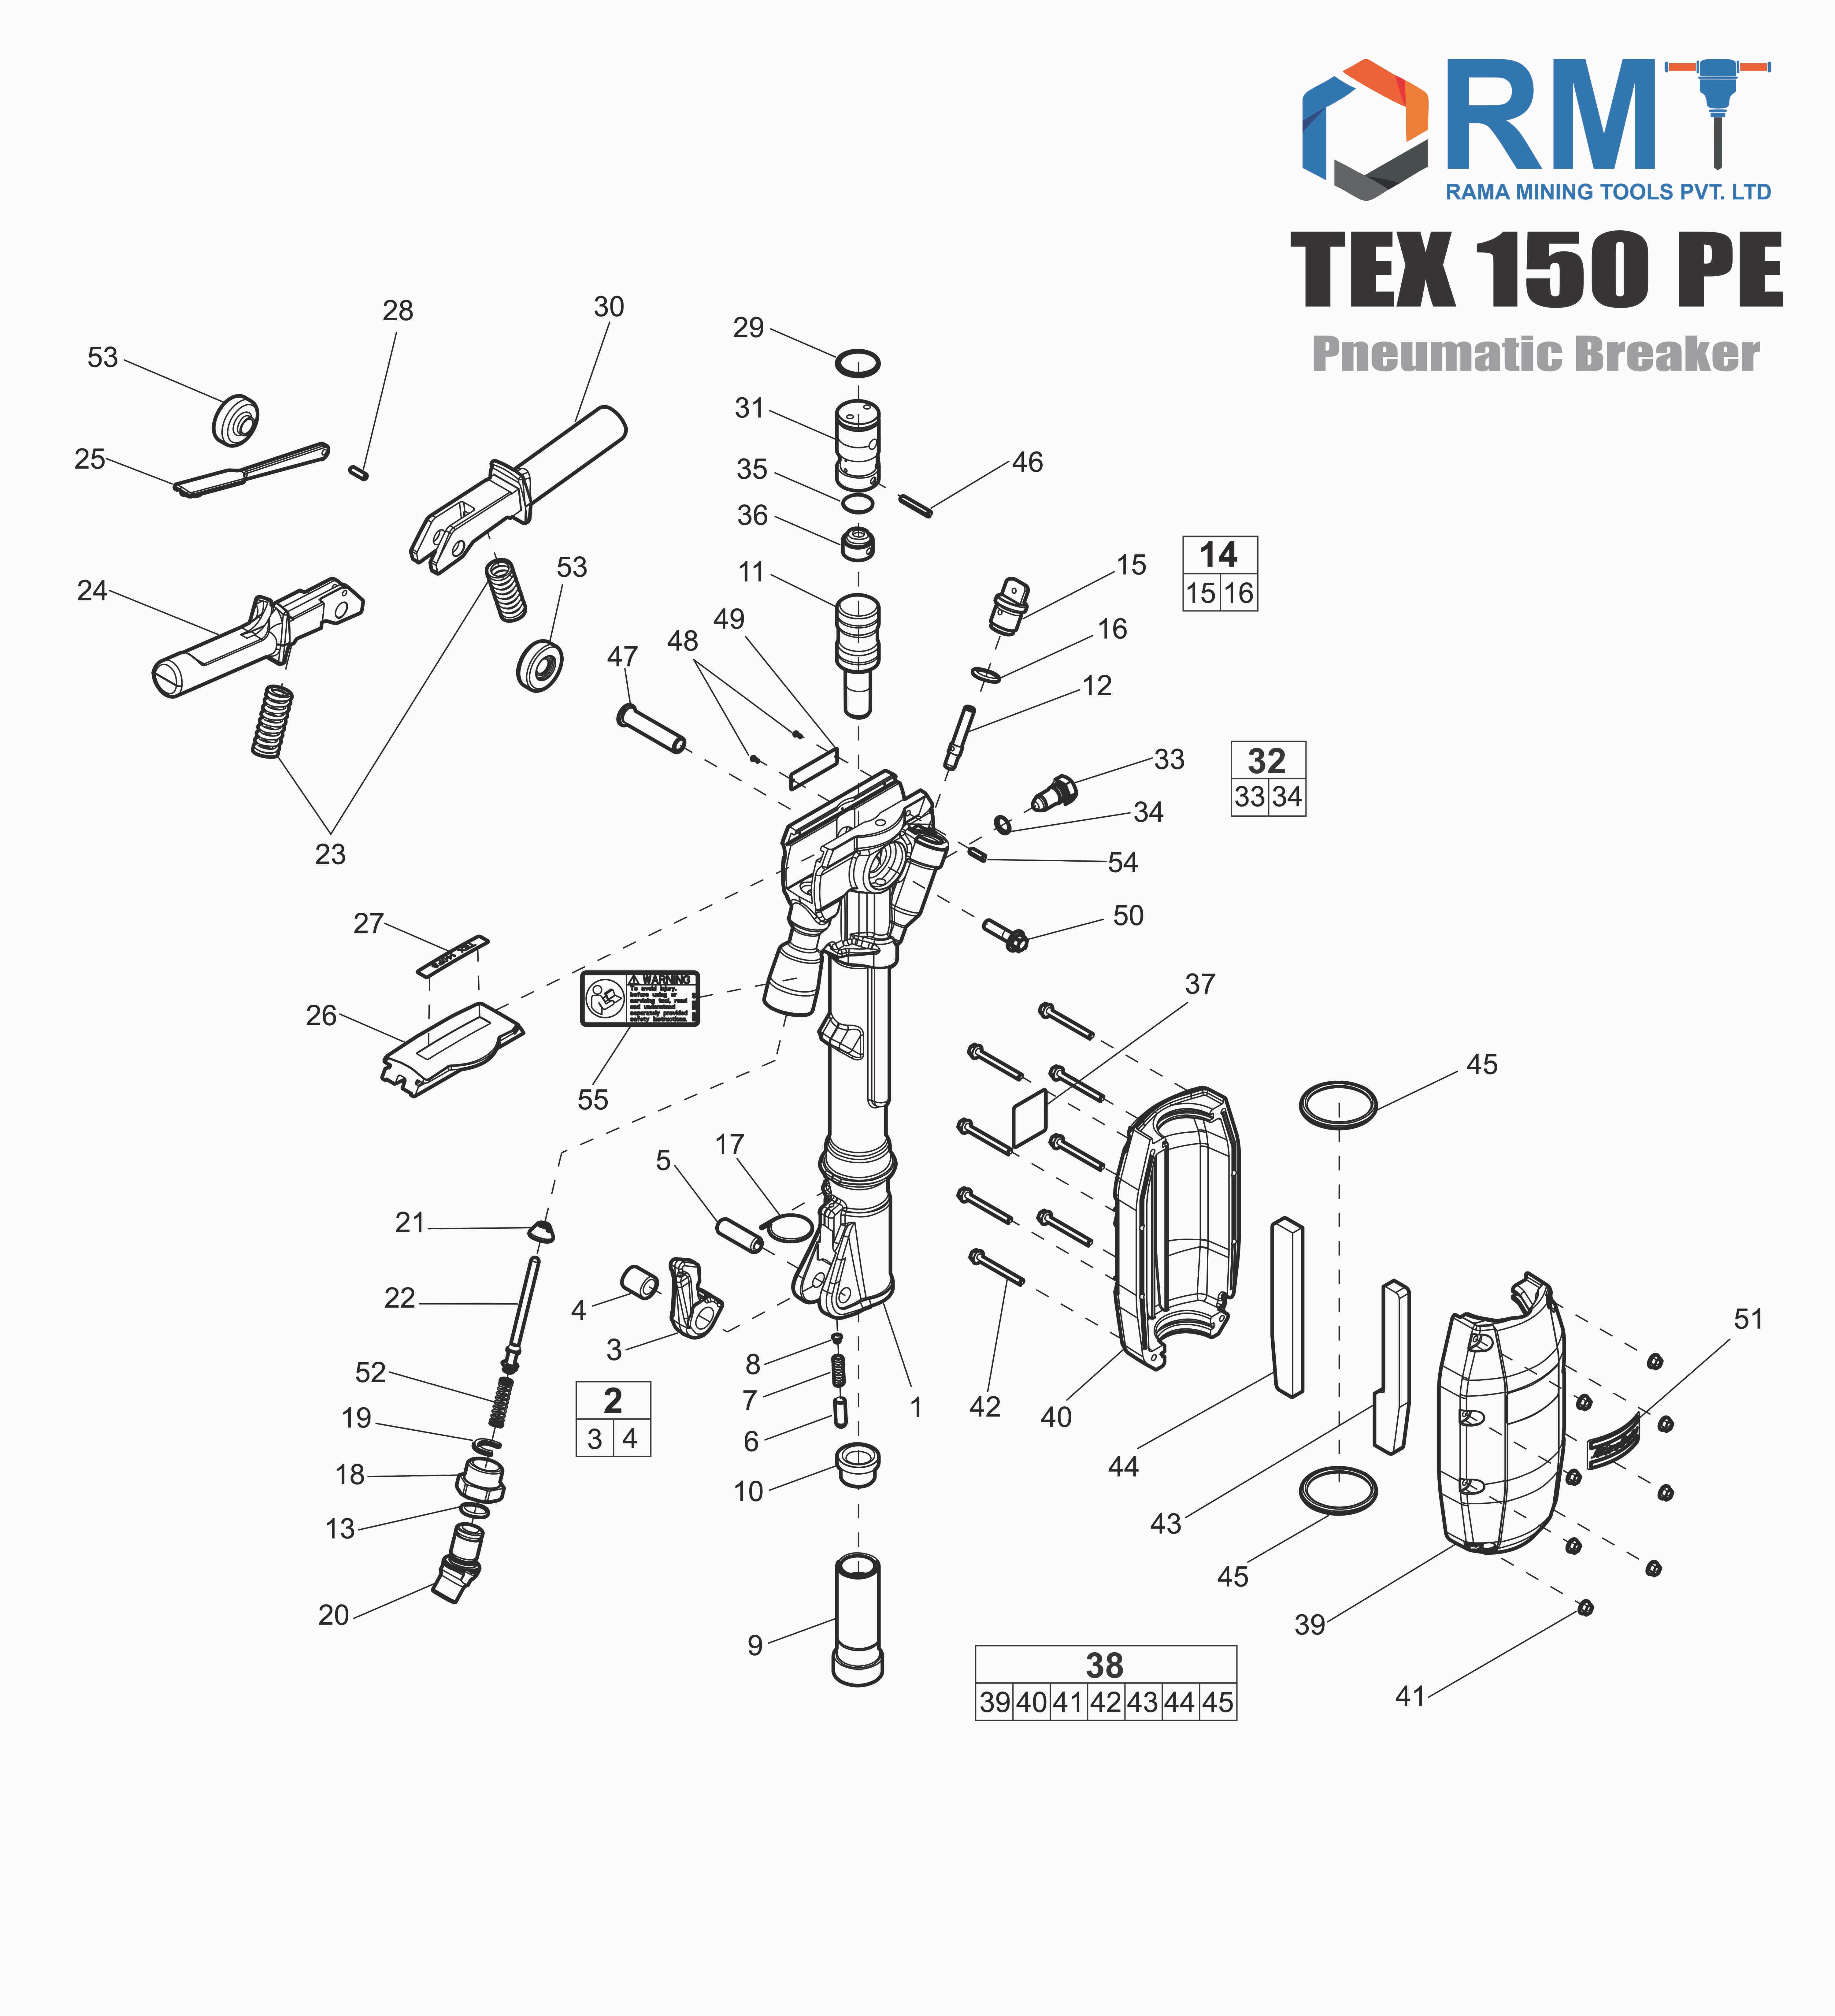 TEX 150 PE - Pneumatic Breaker